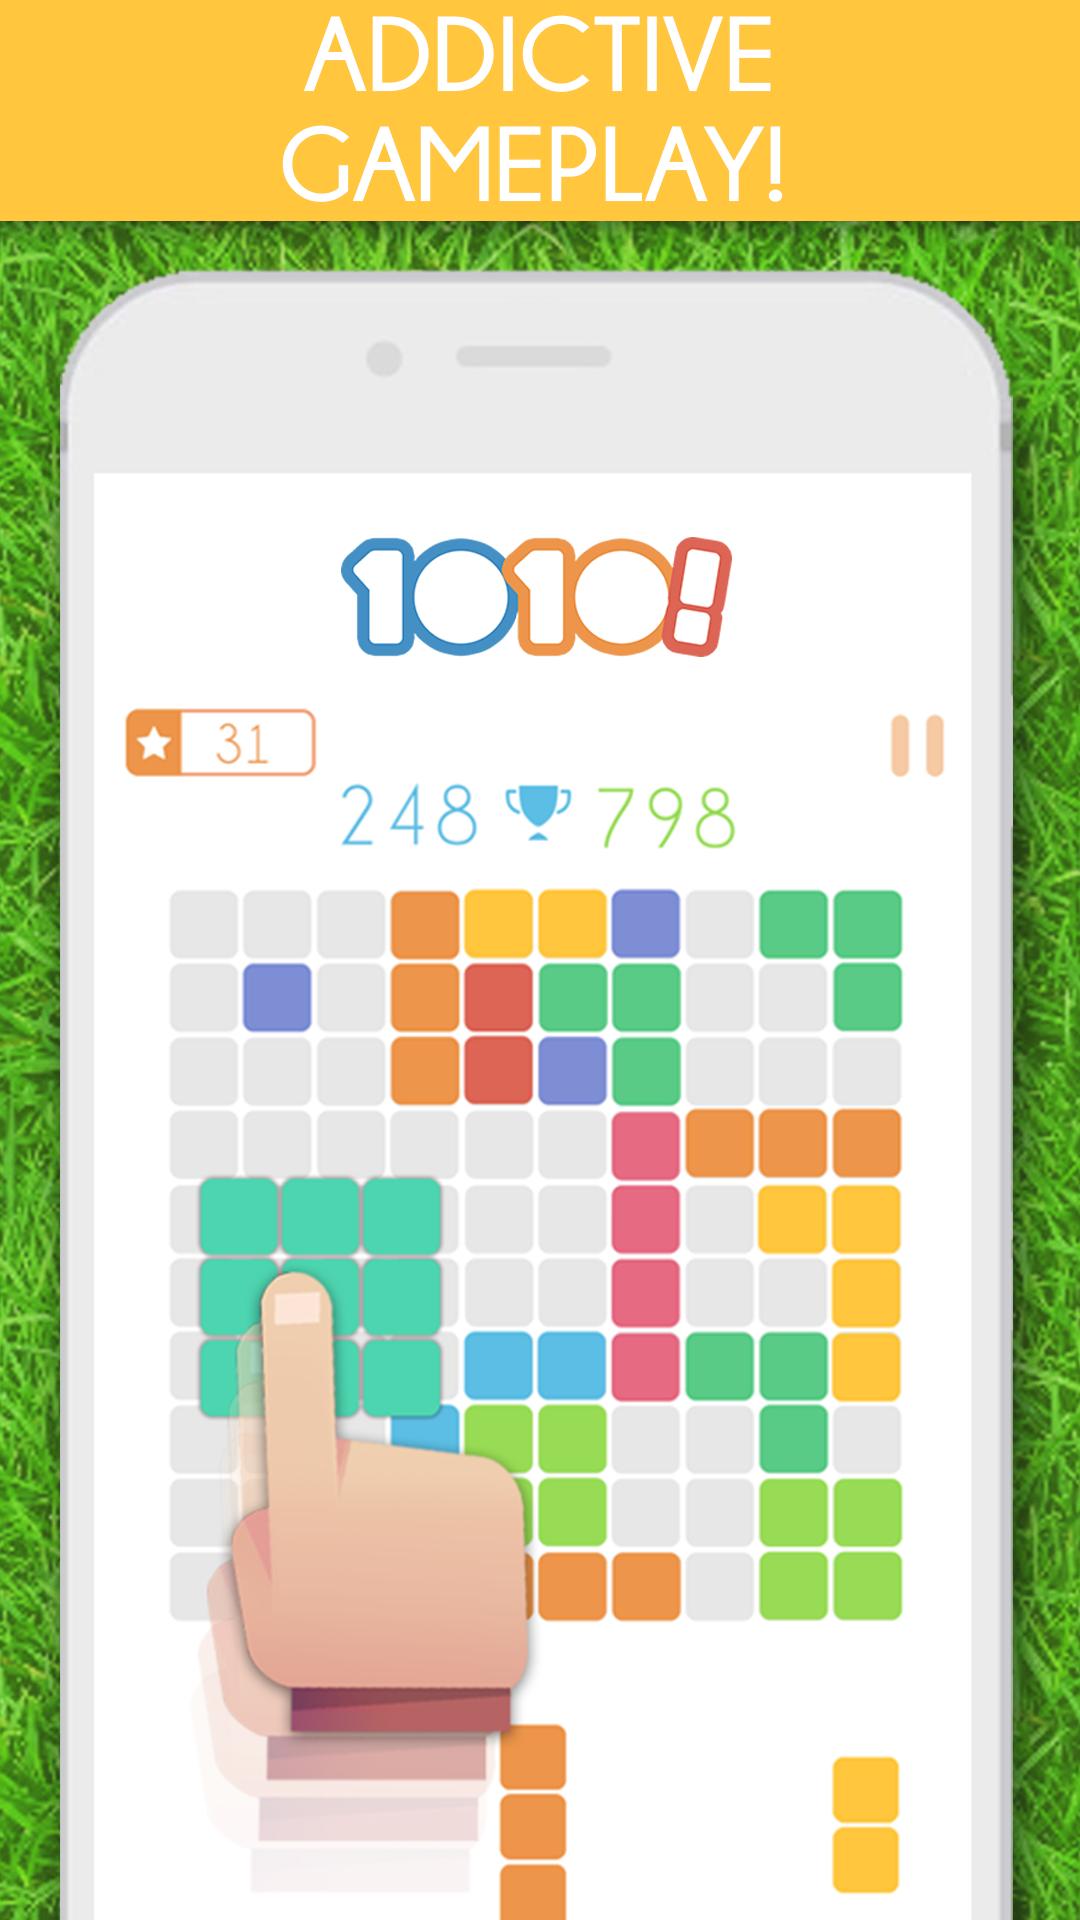 1010! Block Puzzle Game 68.8.0 Screenshot 1